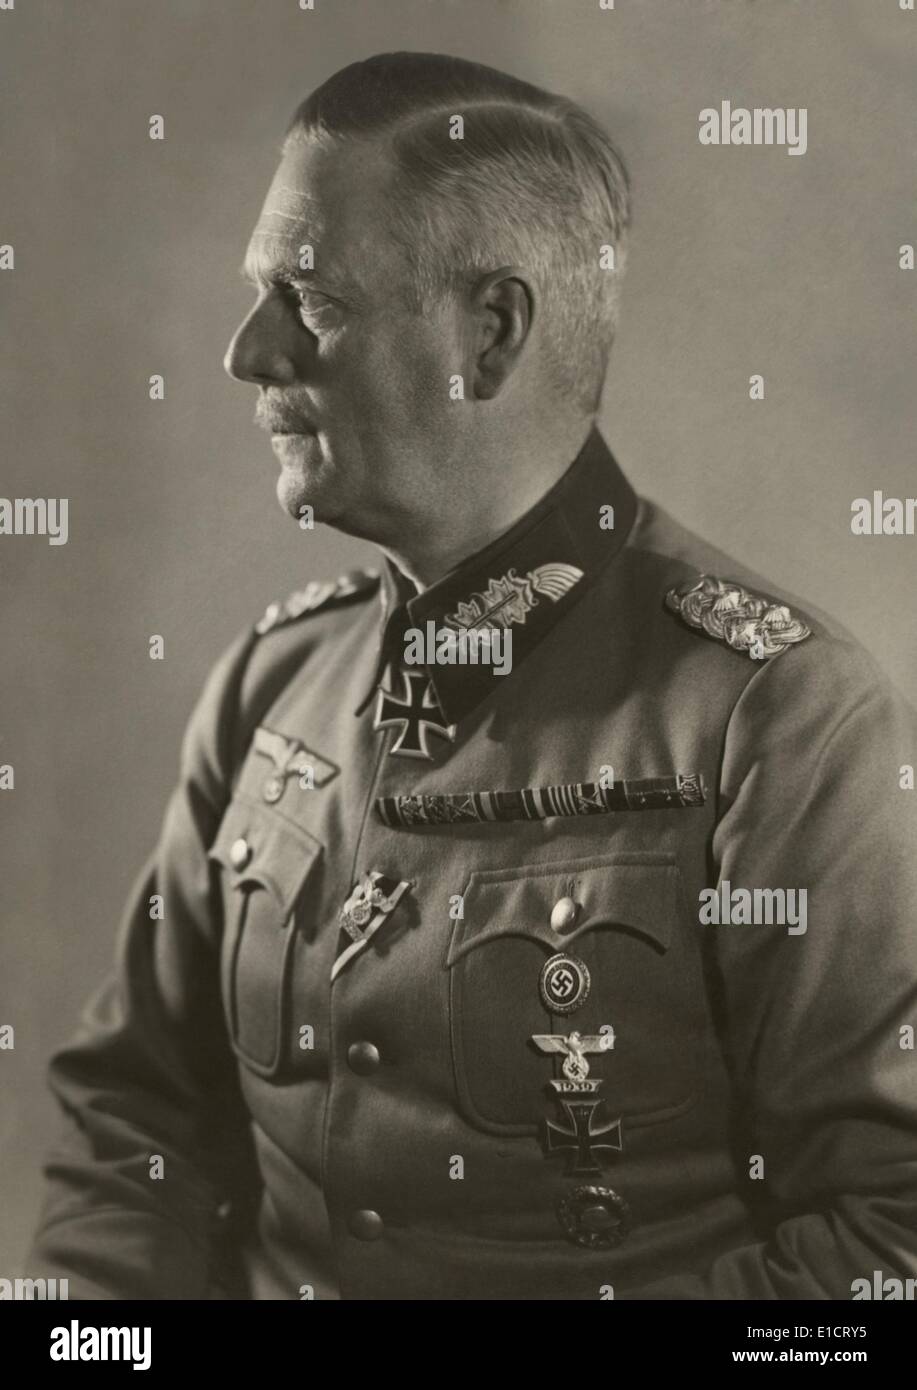 Generale nazista Wilhelm Keitel, Comandante in Capo delle Forze Armate, Ottobre 30, 1939. Foto di Heinrich Hoffman. Foto Stock